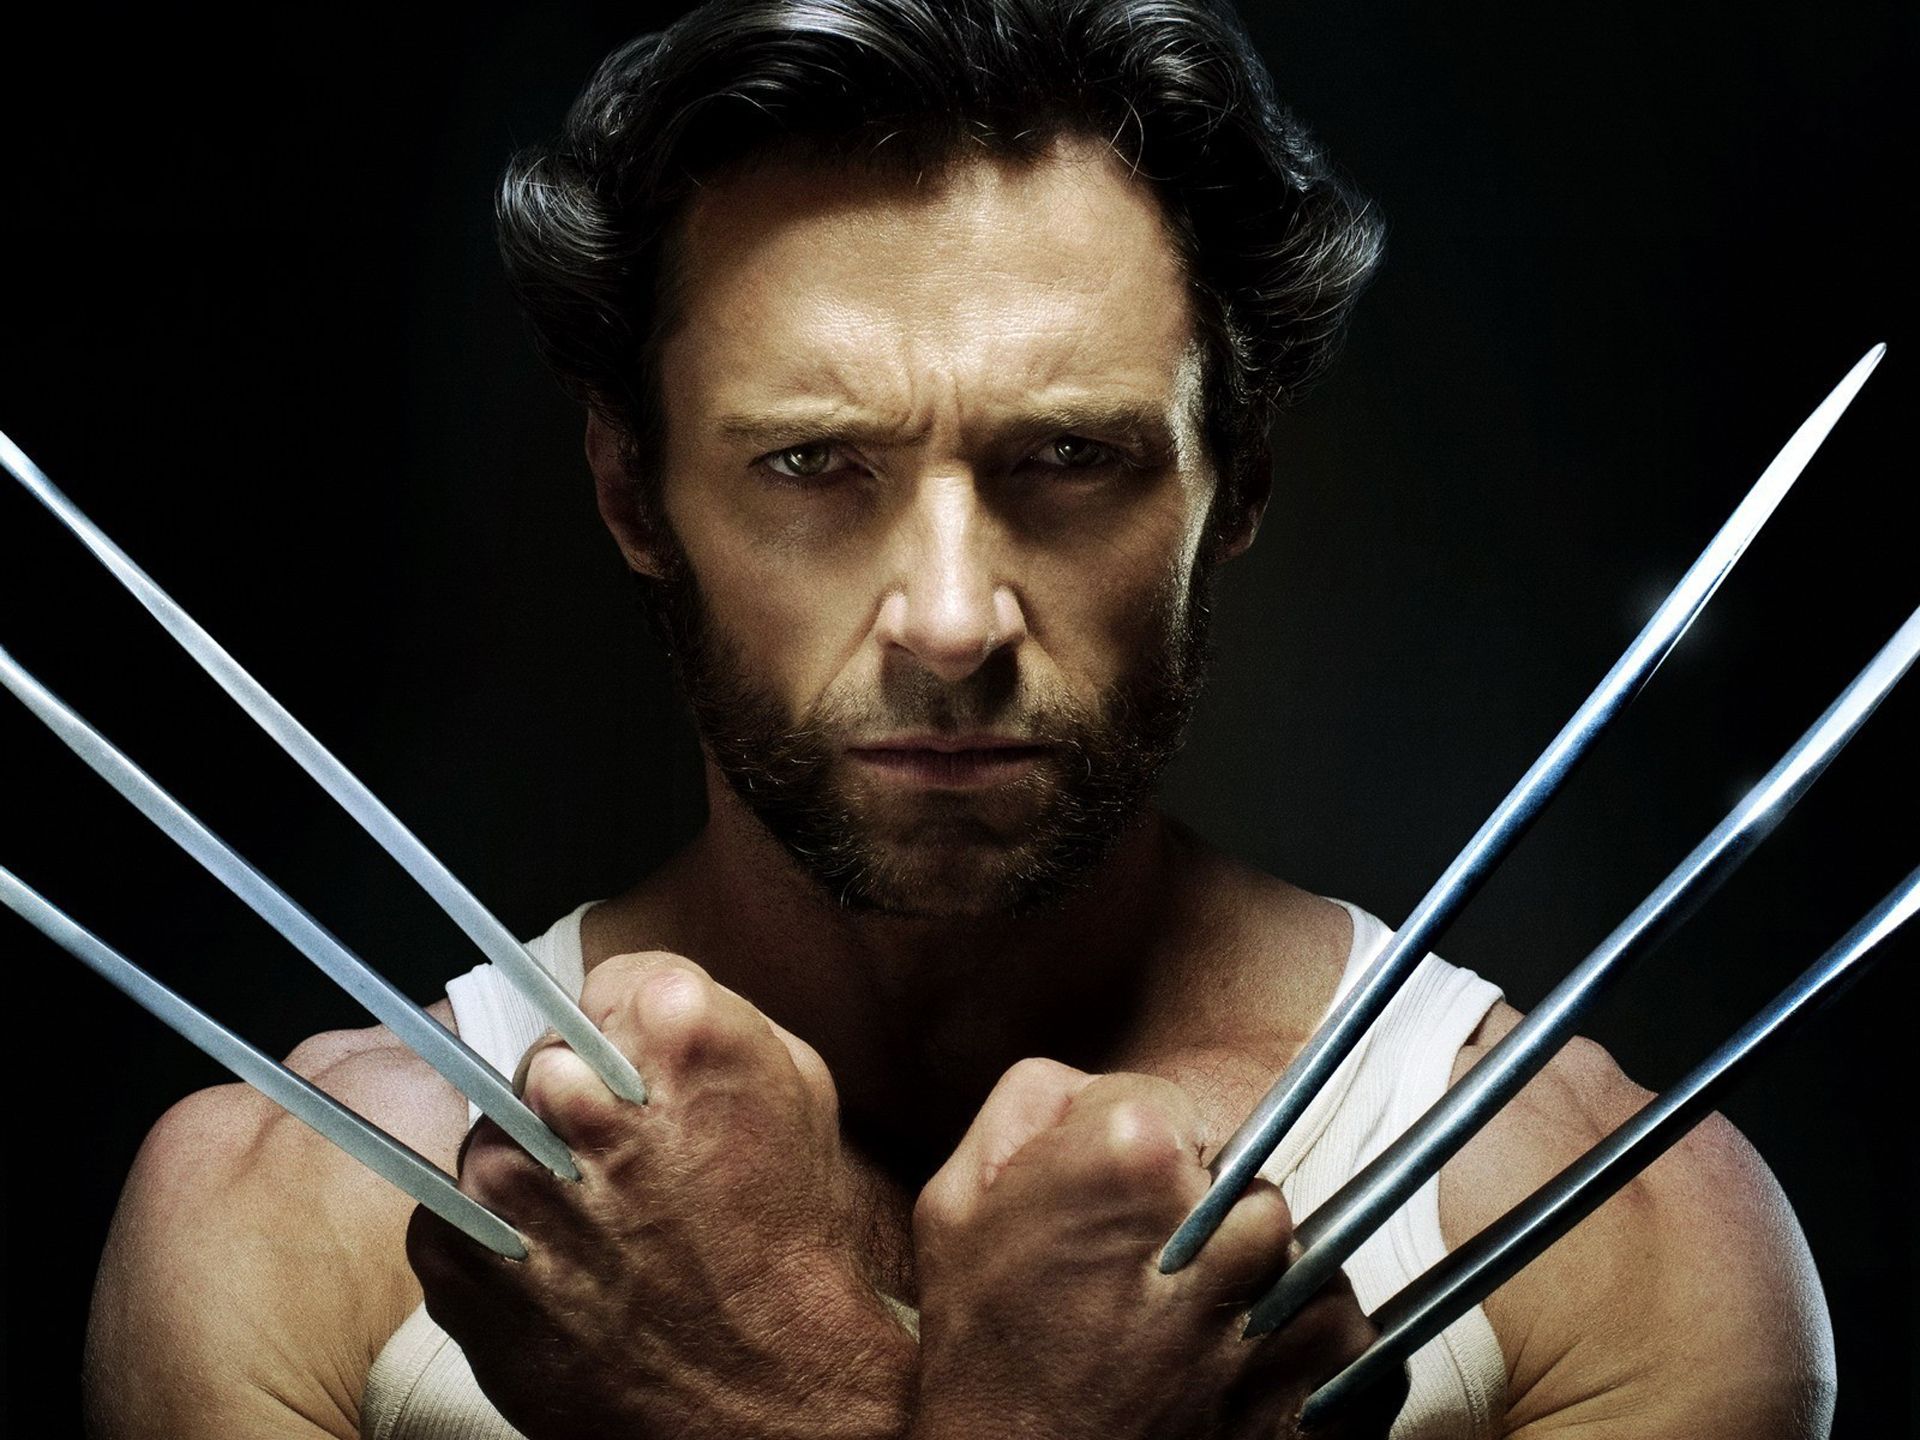 wolverine Ma kły, ma pazury, czyli kilka słów o Wolverine